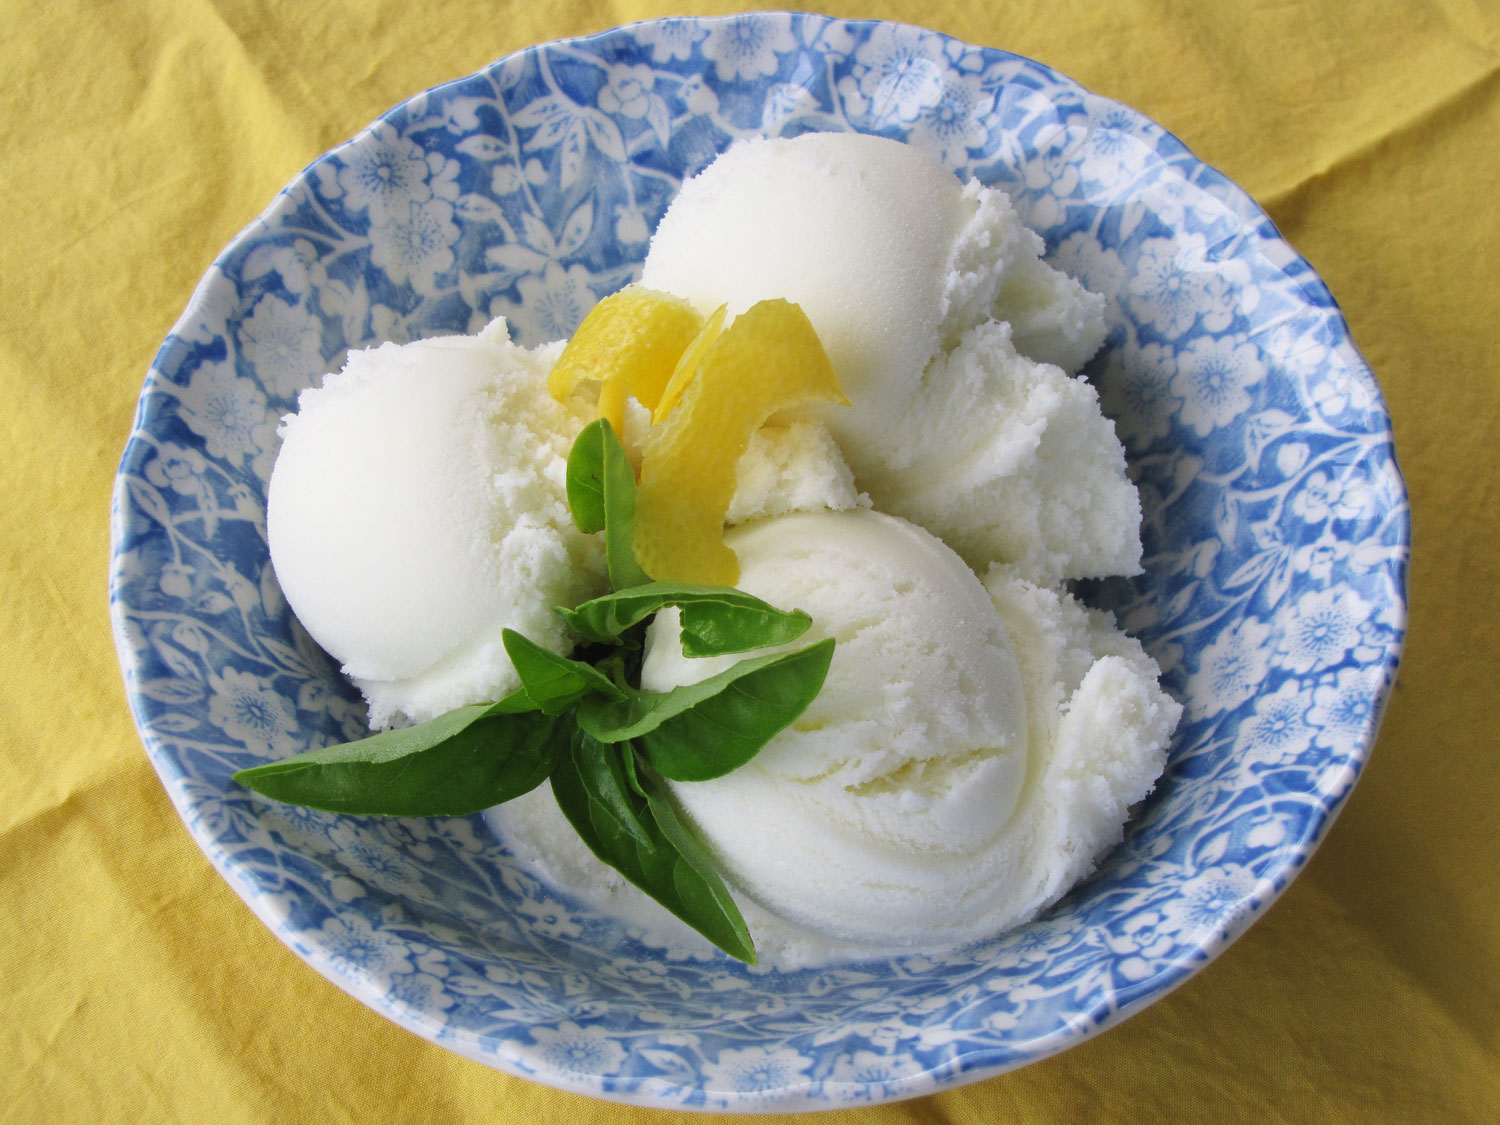 Lemon Basil Ricotta Ice Cream